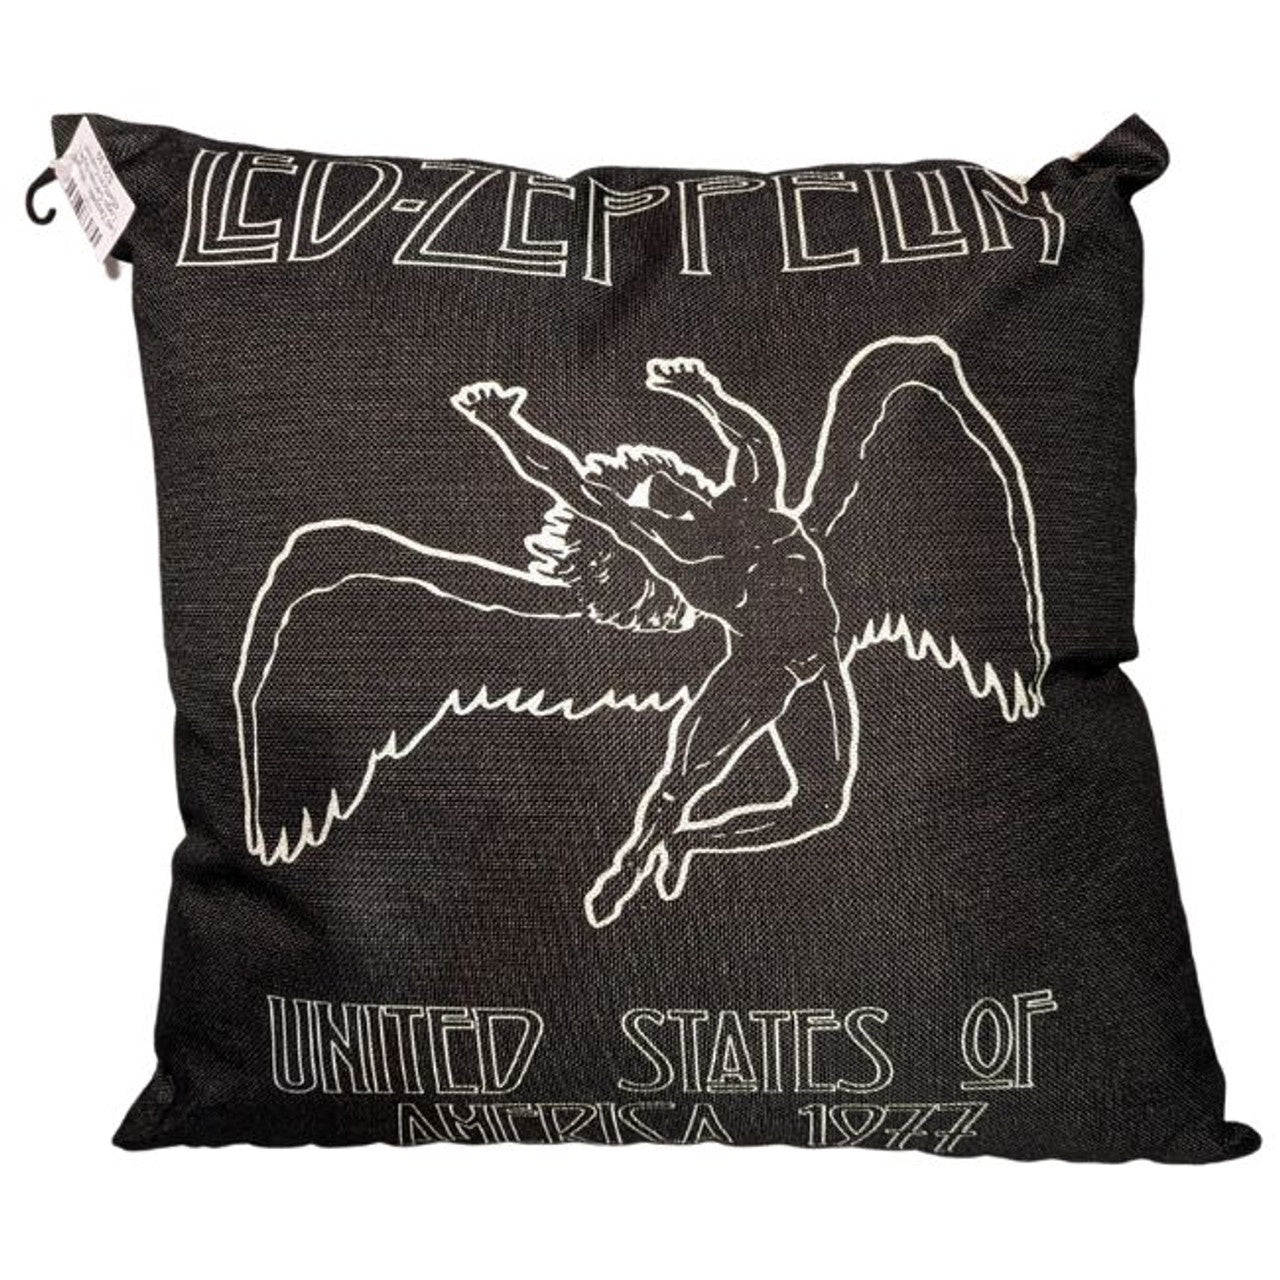 Led Zeppelin - 1977 USA Tour Cushion Throw Pillow